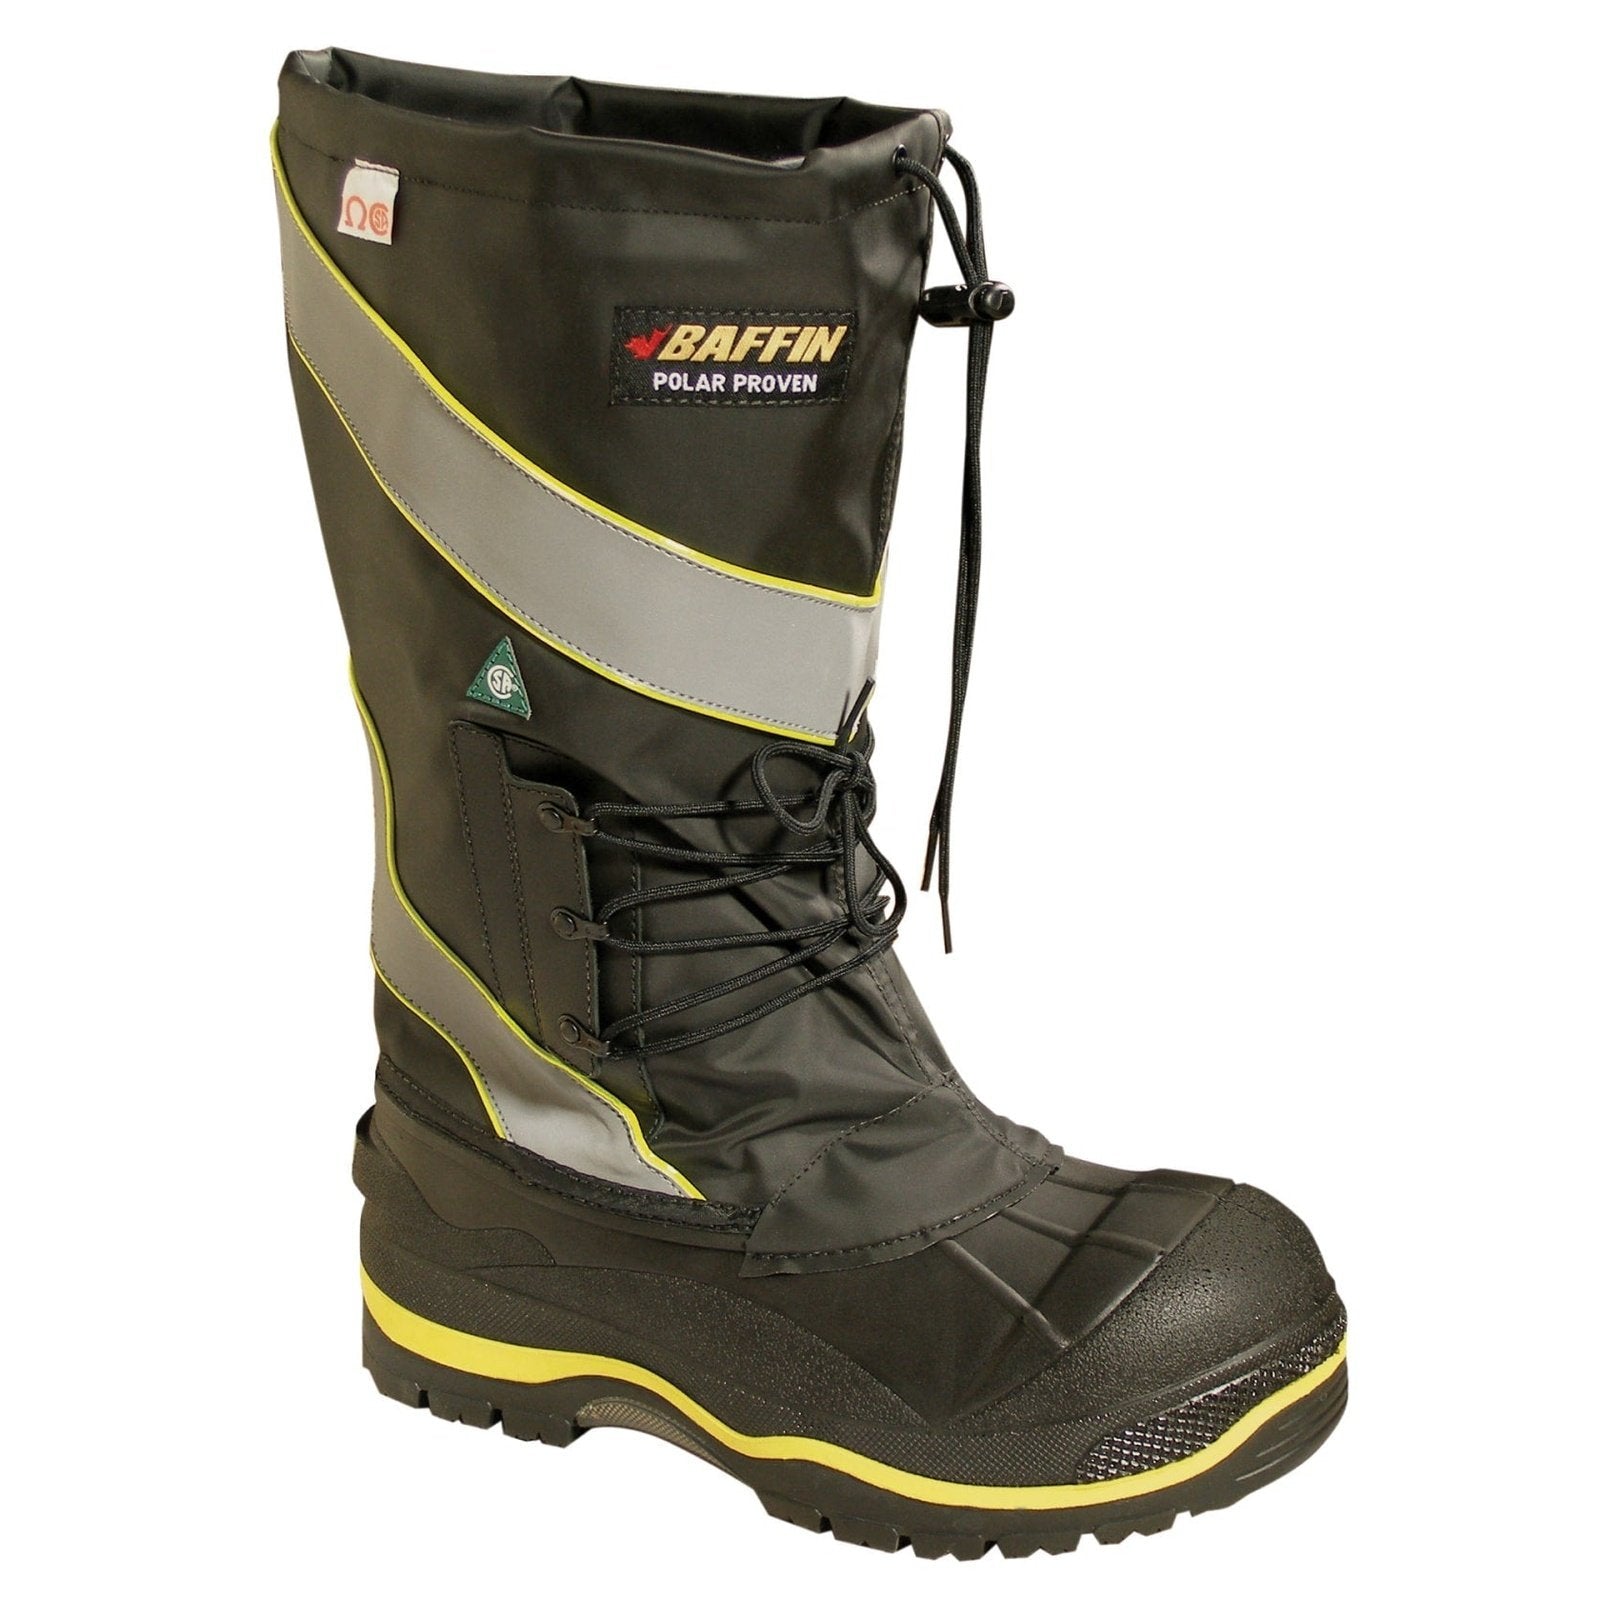 Baffin Work Boots Rated Derrick – Western Wear